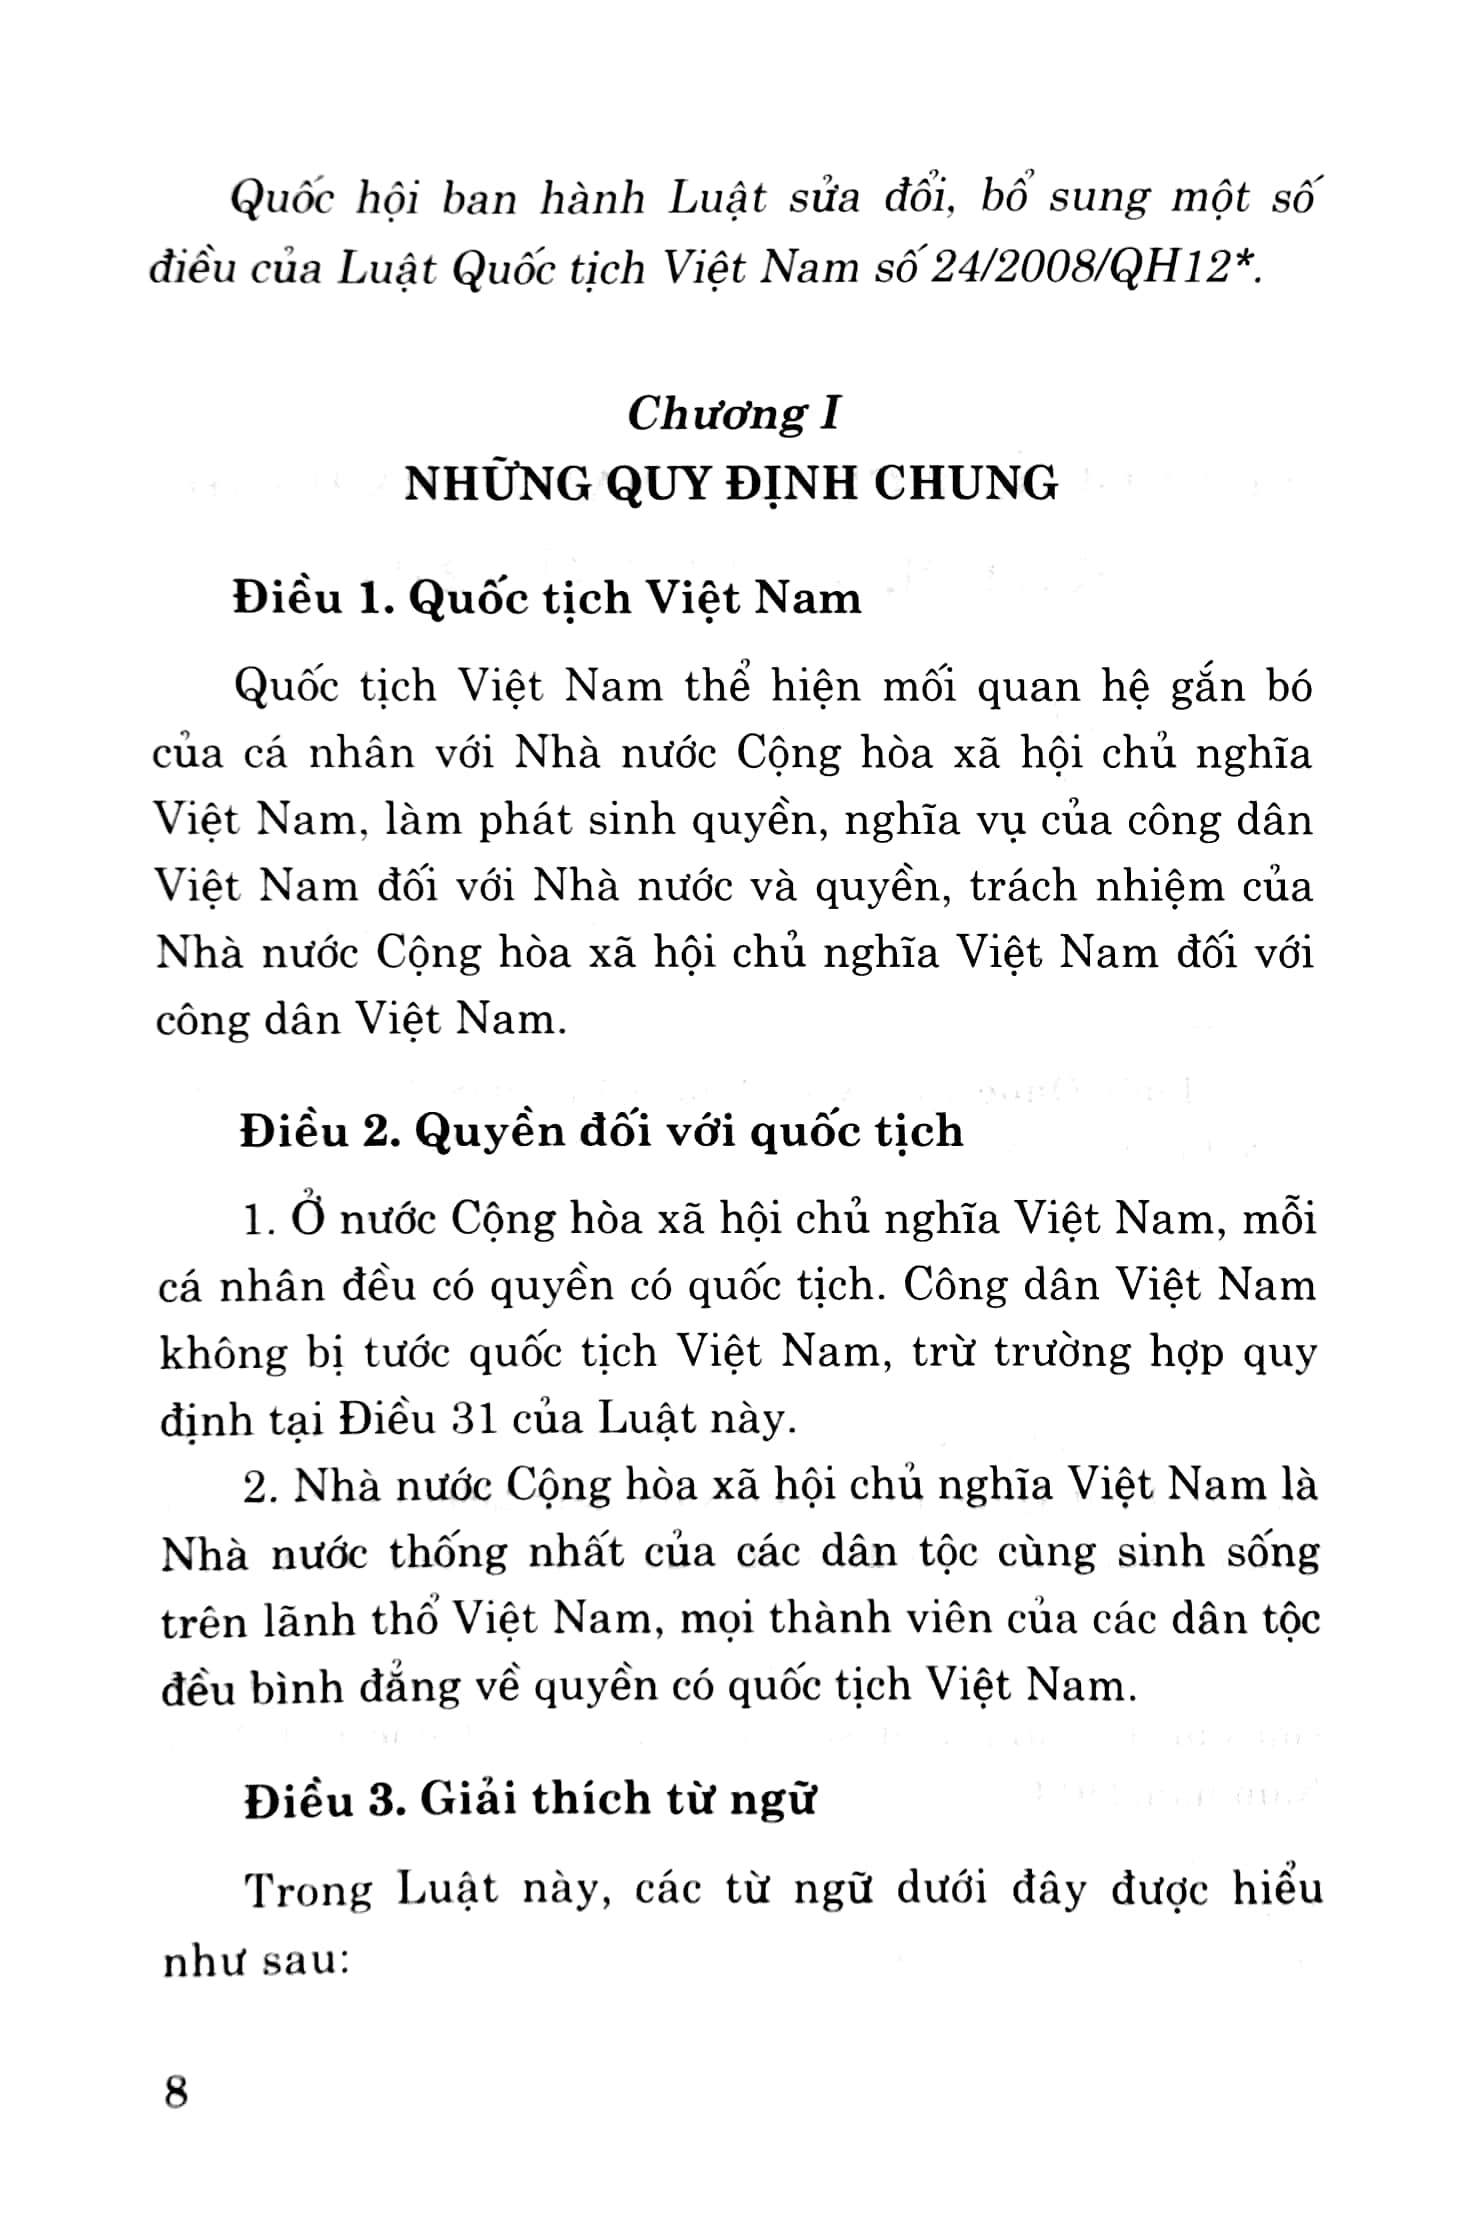 Luật Quốc Tịch Việt Nam Hiện Hành Sửa Đổi, Bổ Sung Năm 2014 PDF